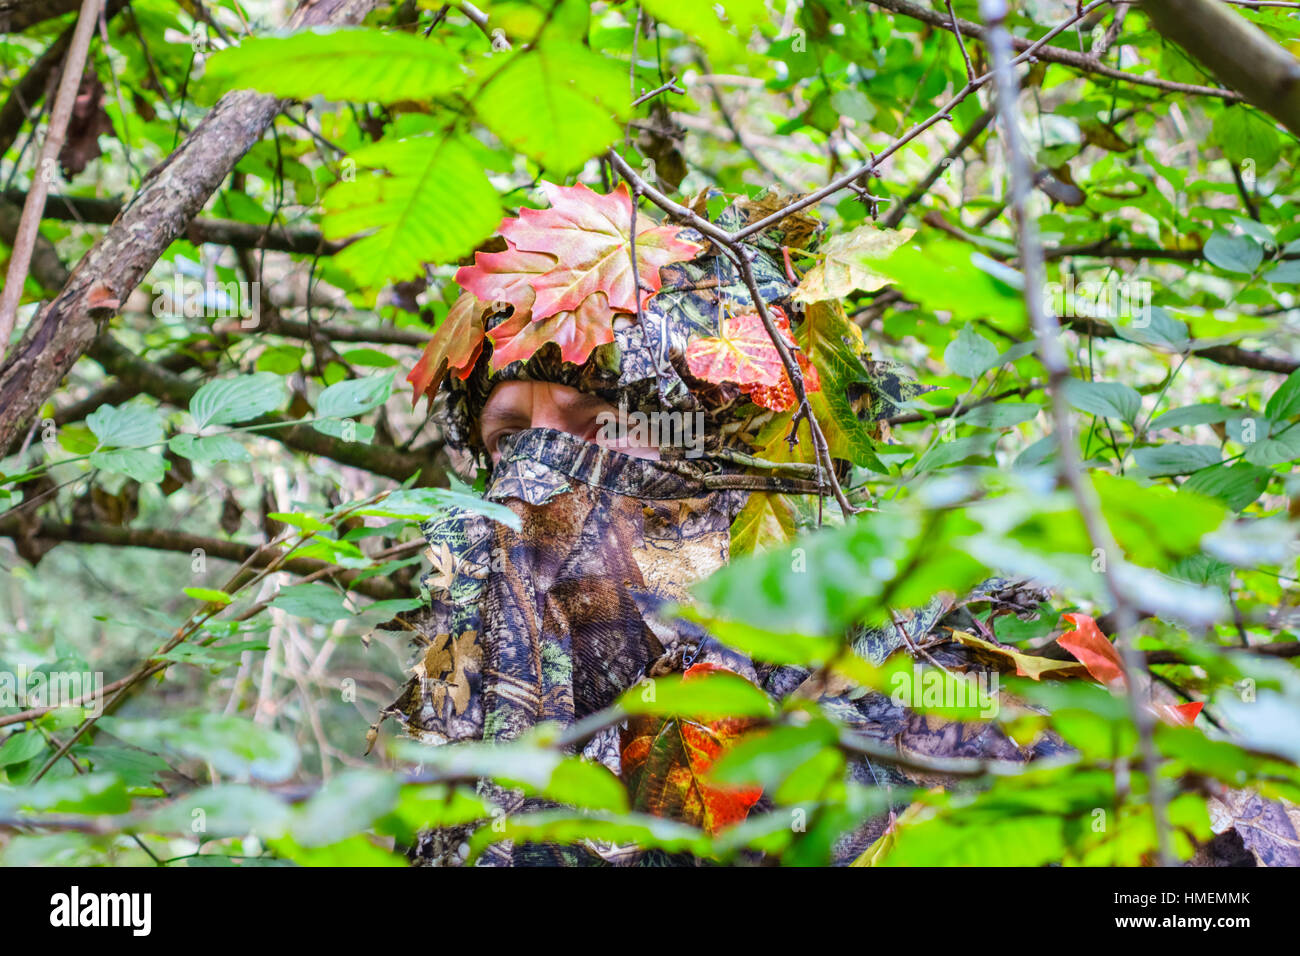 Hunter, wildlife watcher dans vêtement de camouflage se cachant dans la brousse dans une forêt. Banque D'Images